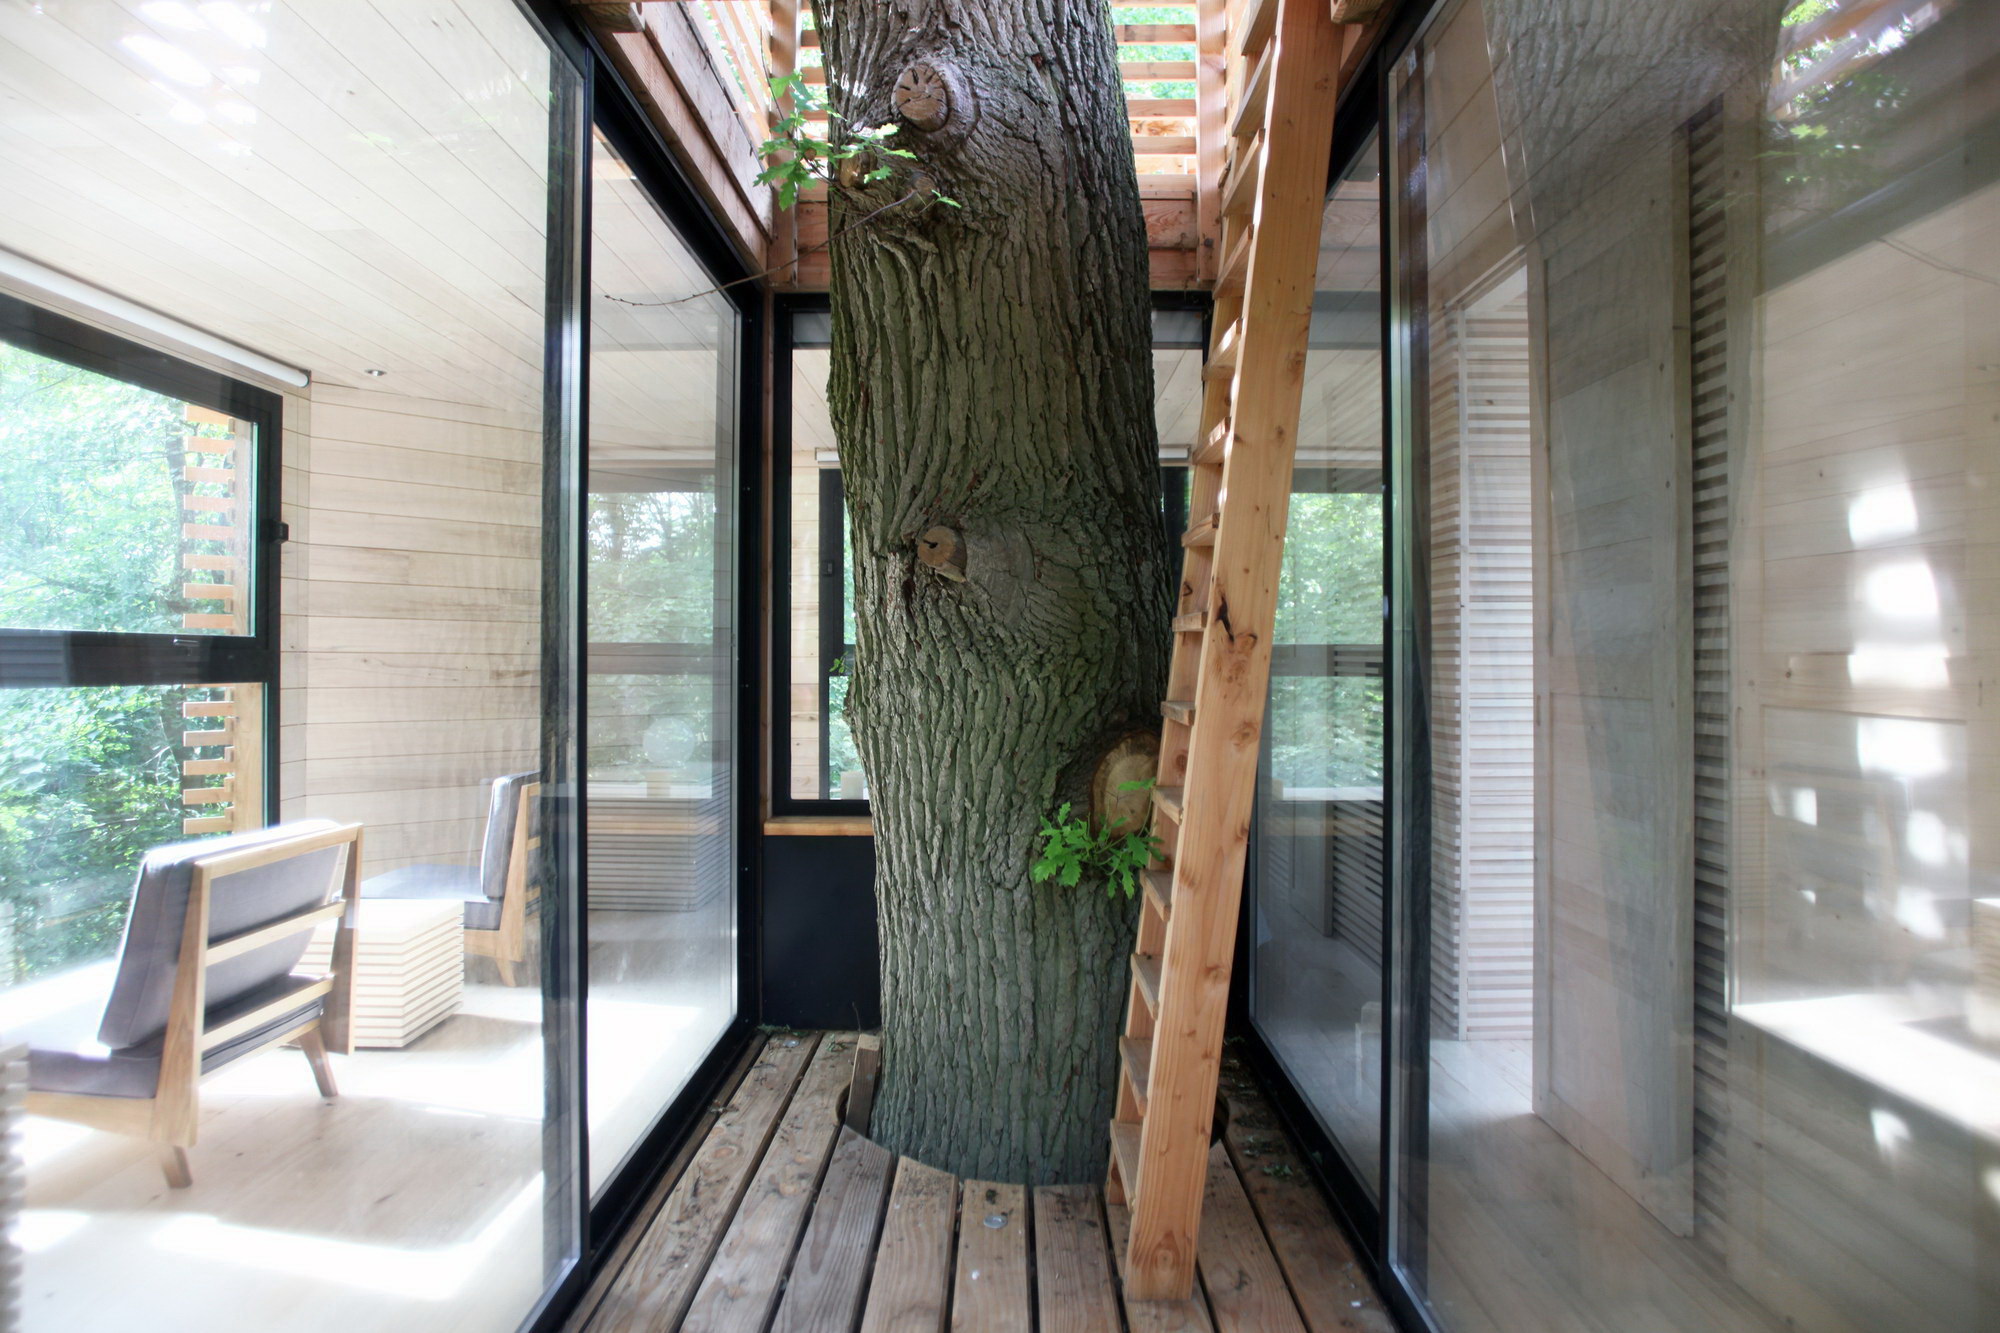 ORIGIN Tree House Hotel by Atelier LAVIT